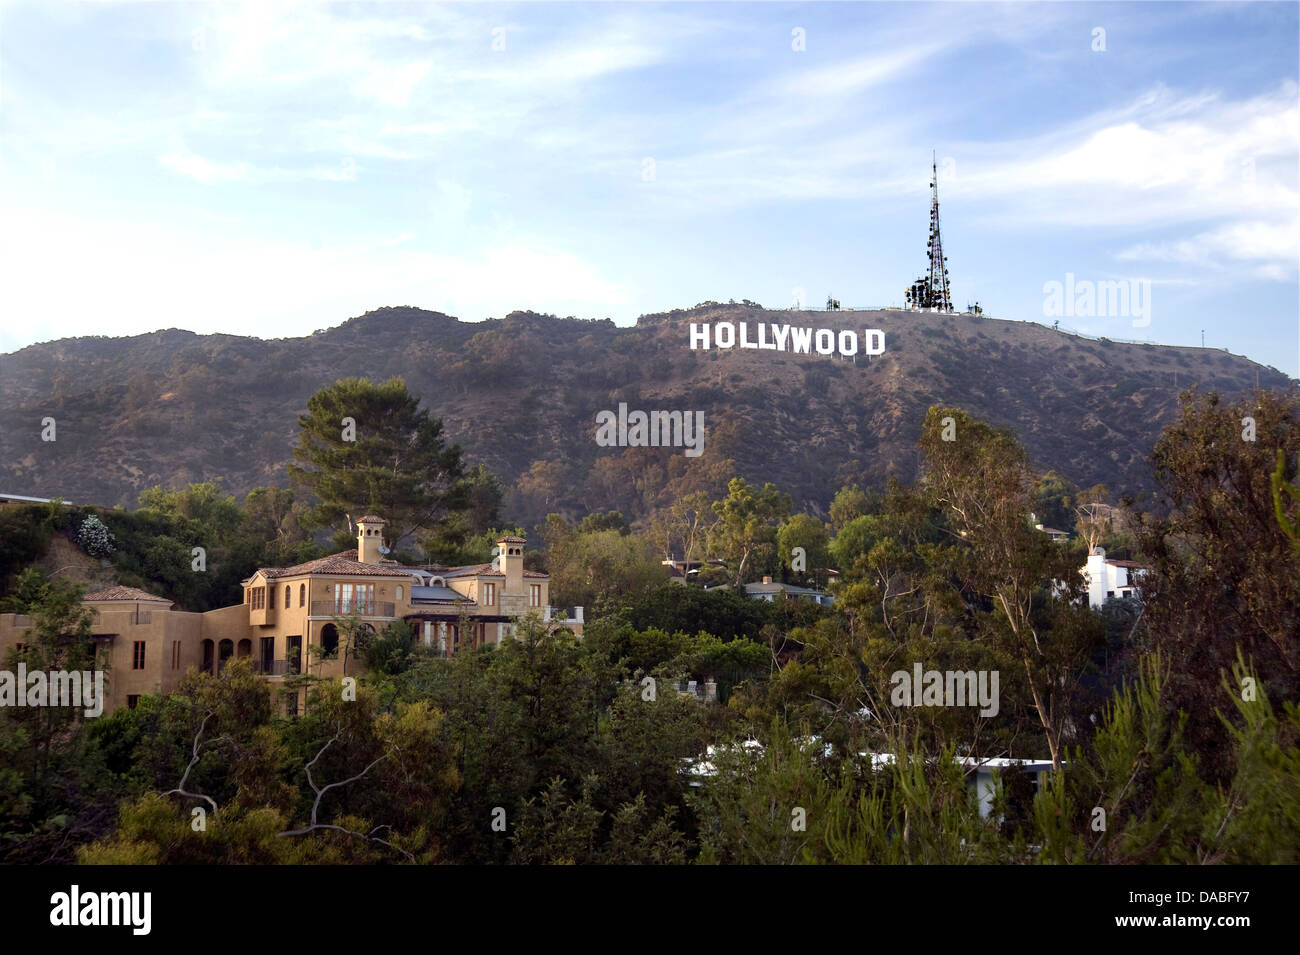 El icónico cartel de Hollywood Foto de stock